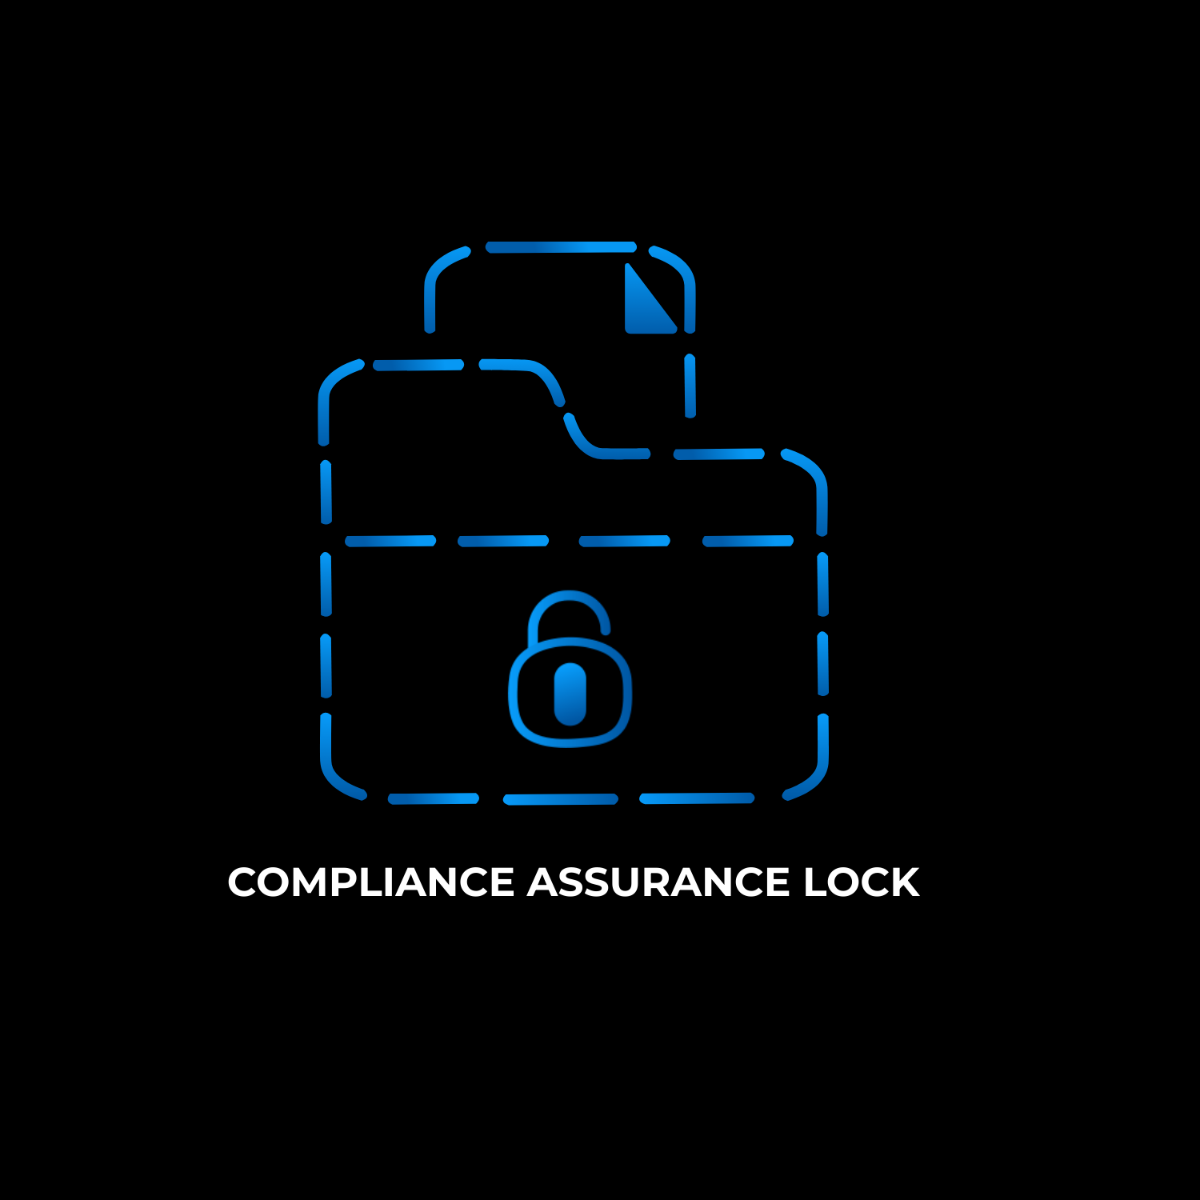 Compliance Assurance Lock Logo Template